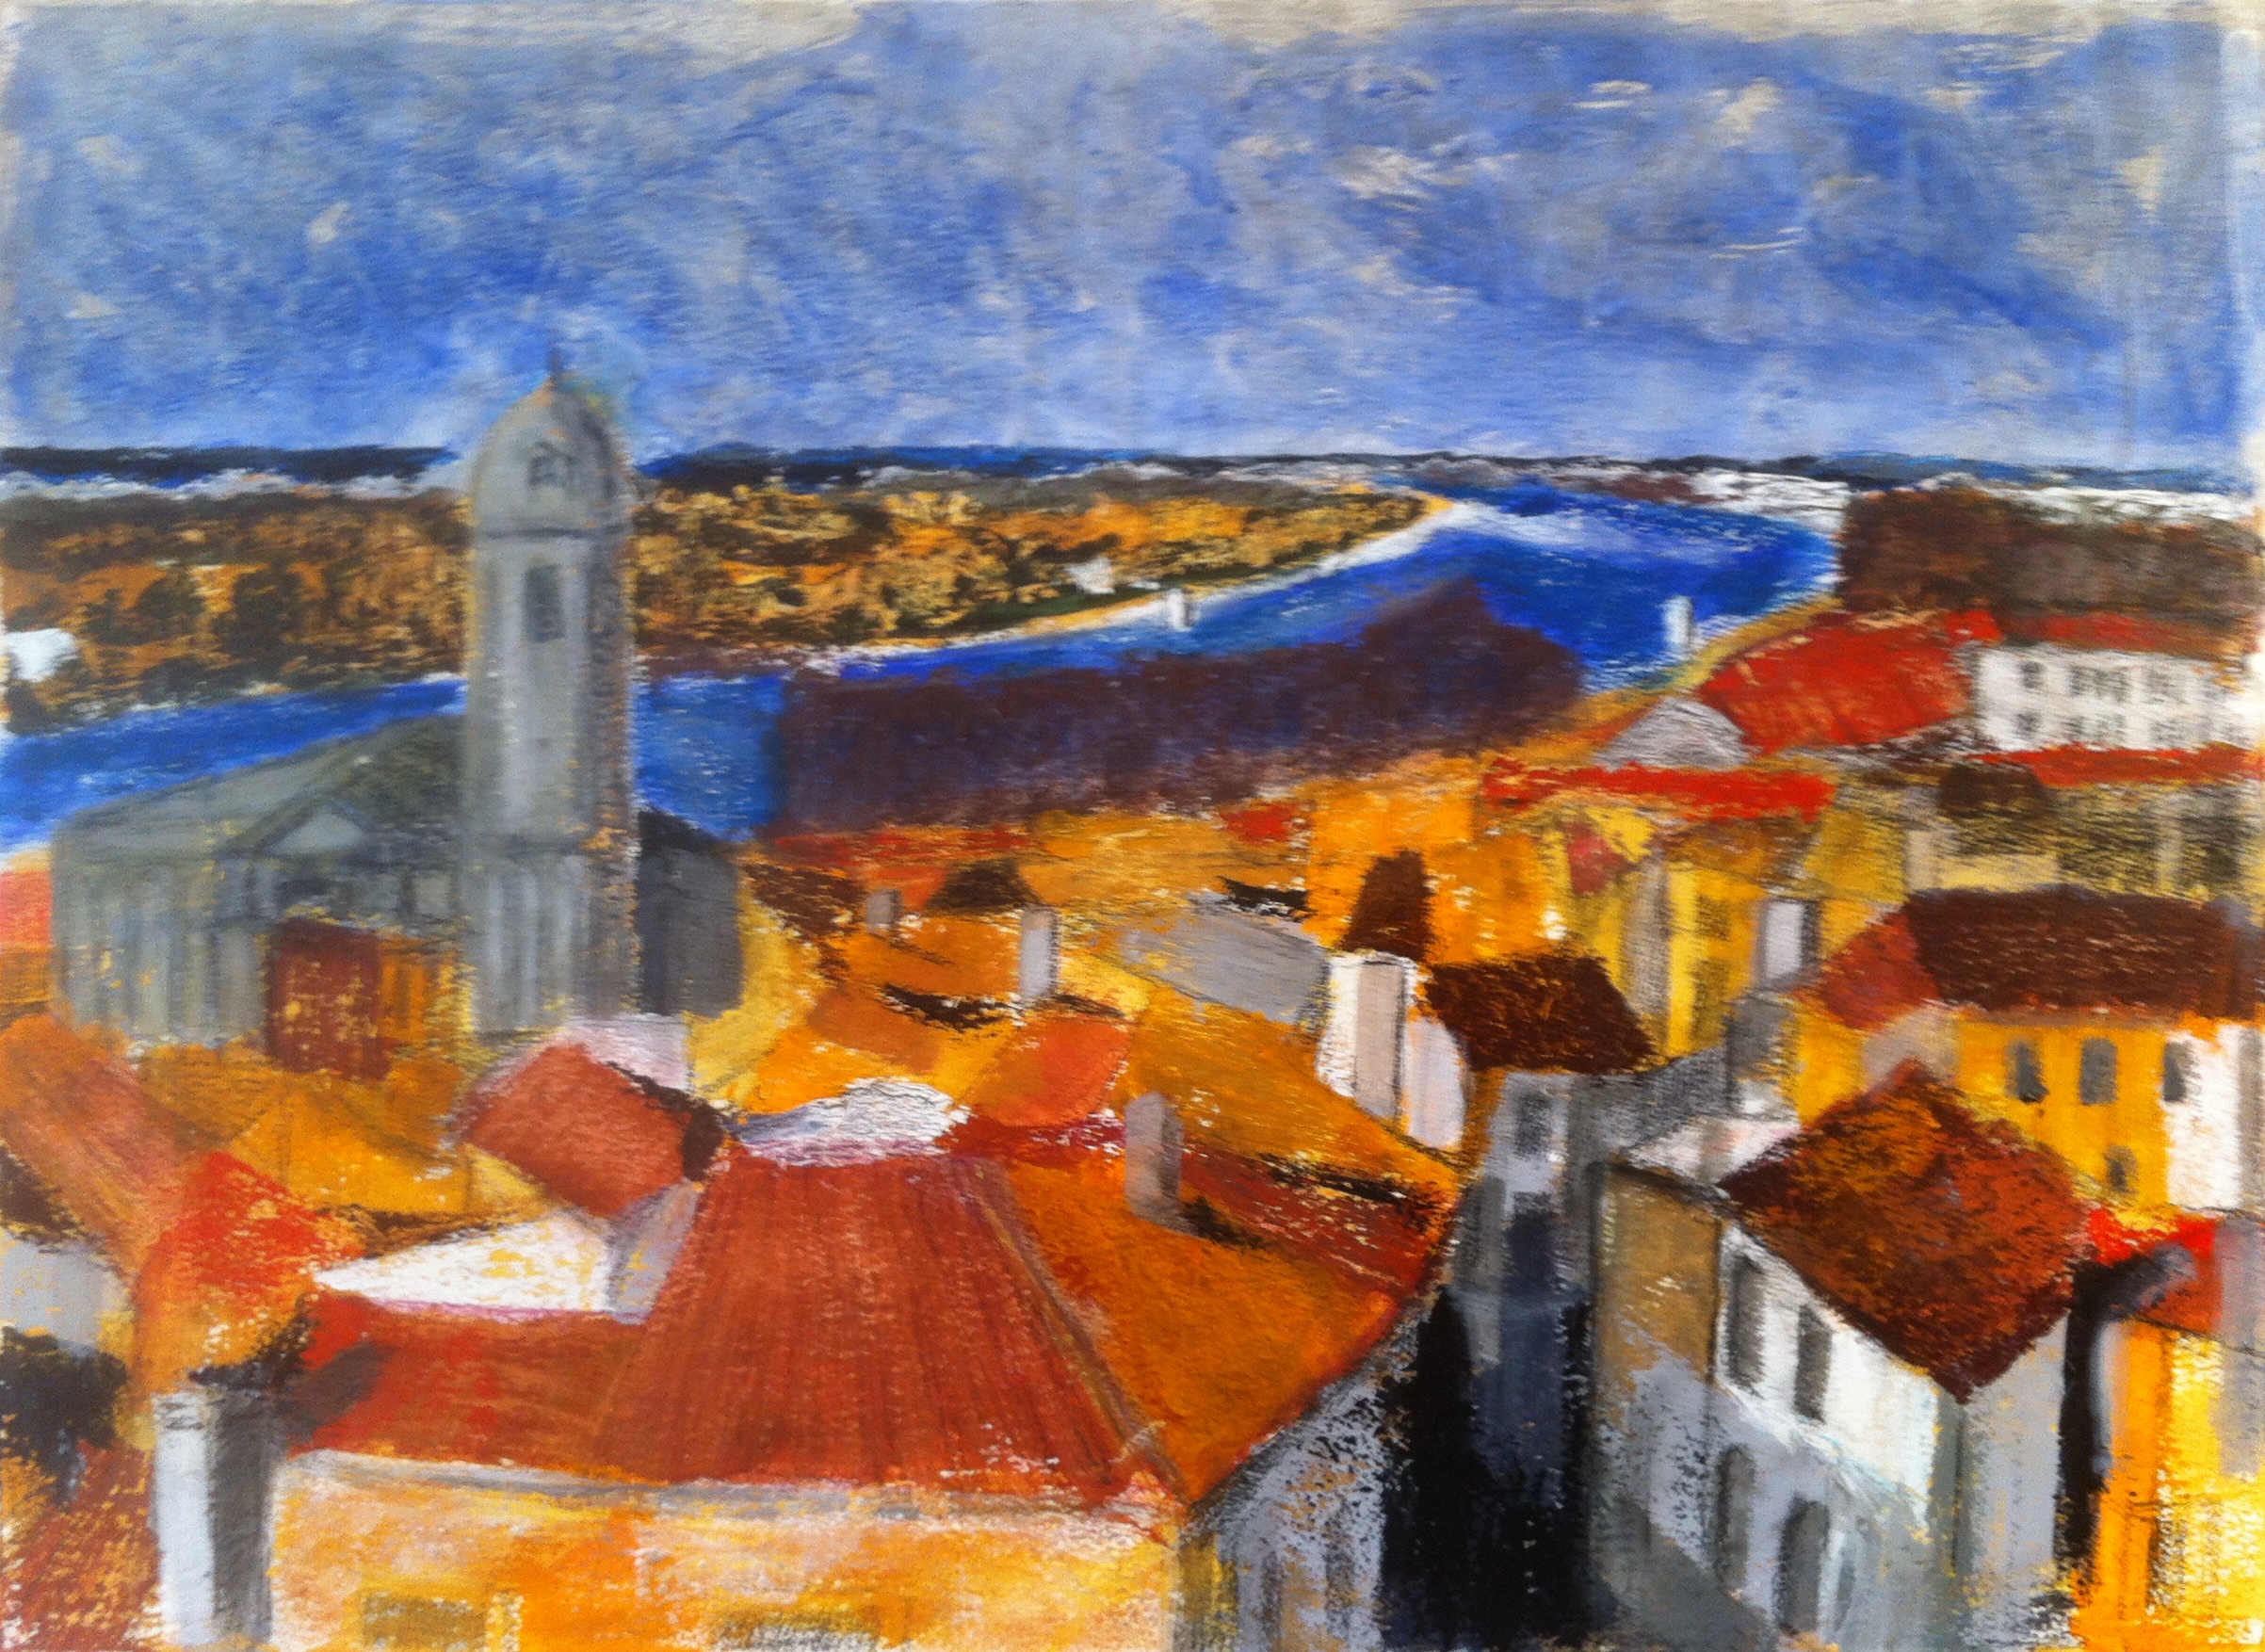 N°1375 - Les toits d'Arles en descendant vers le Rhône - Acrylique et pastel sur papier - 53,5 x 74 cm - 26 avril 2014